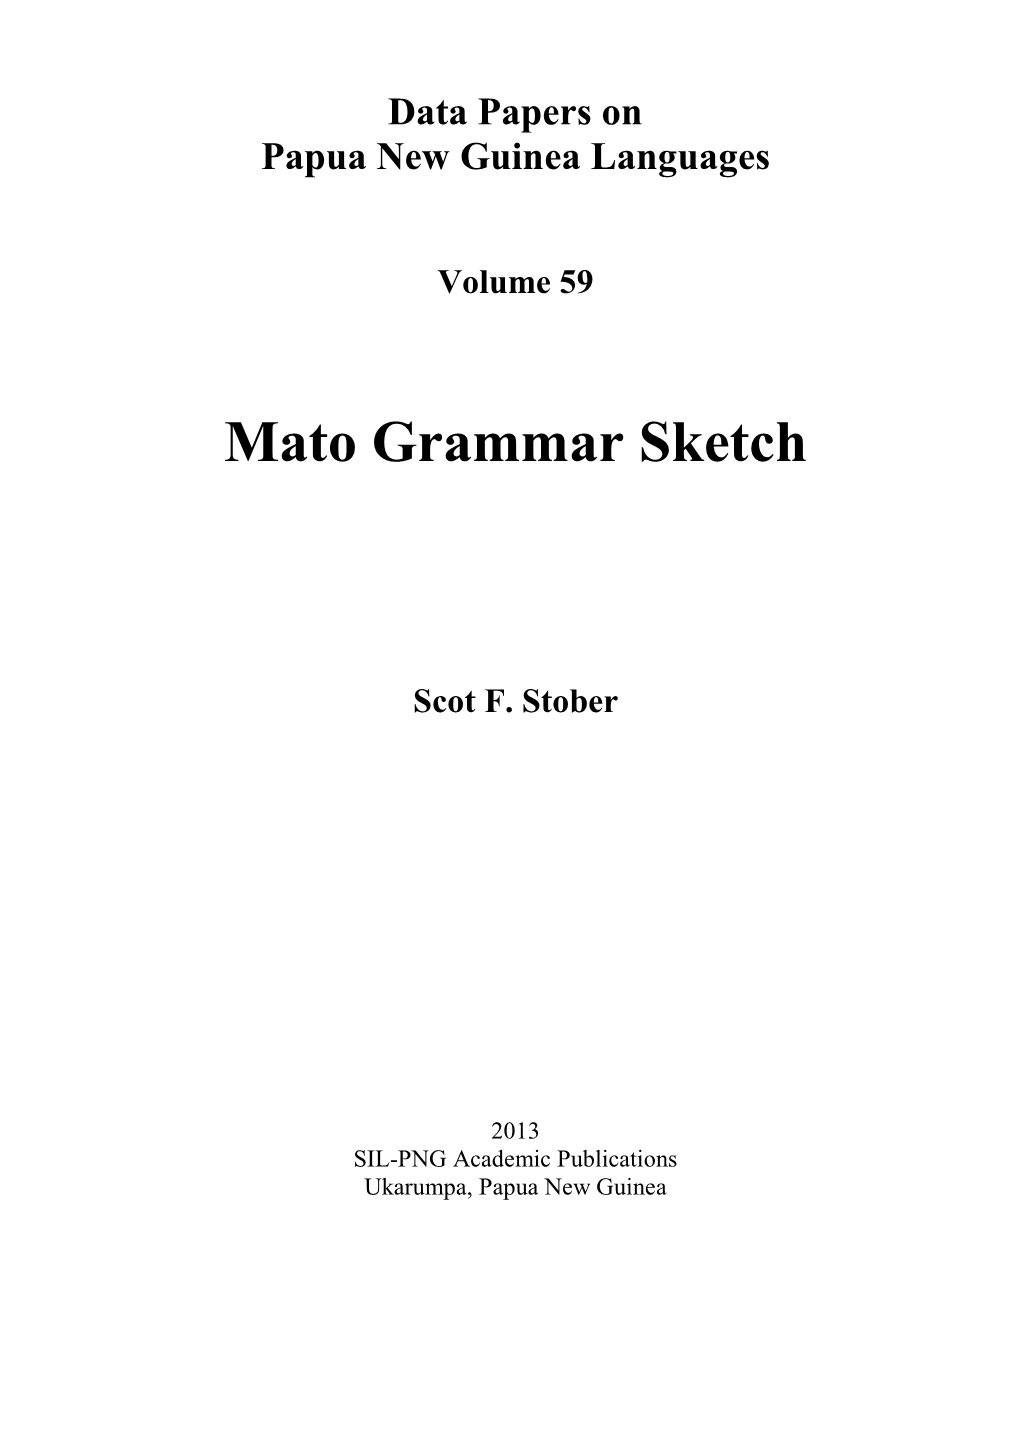 Mato Grammar Sketch